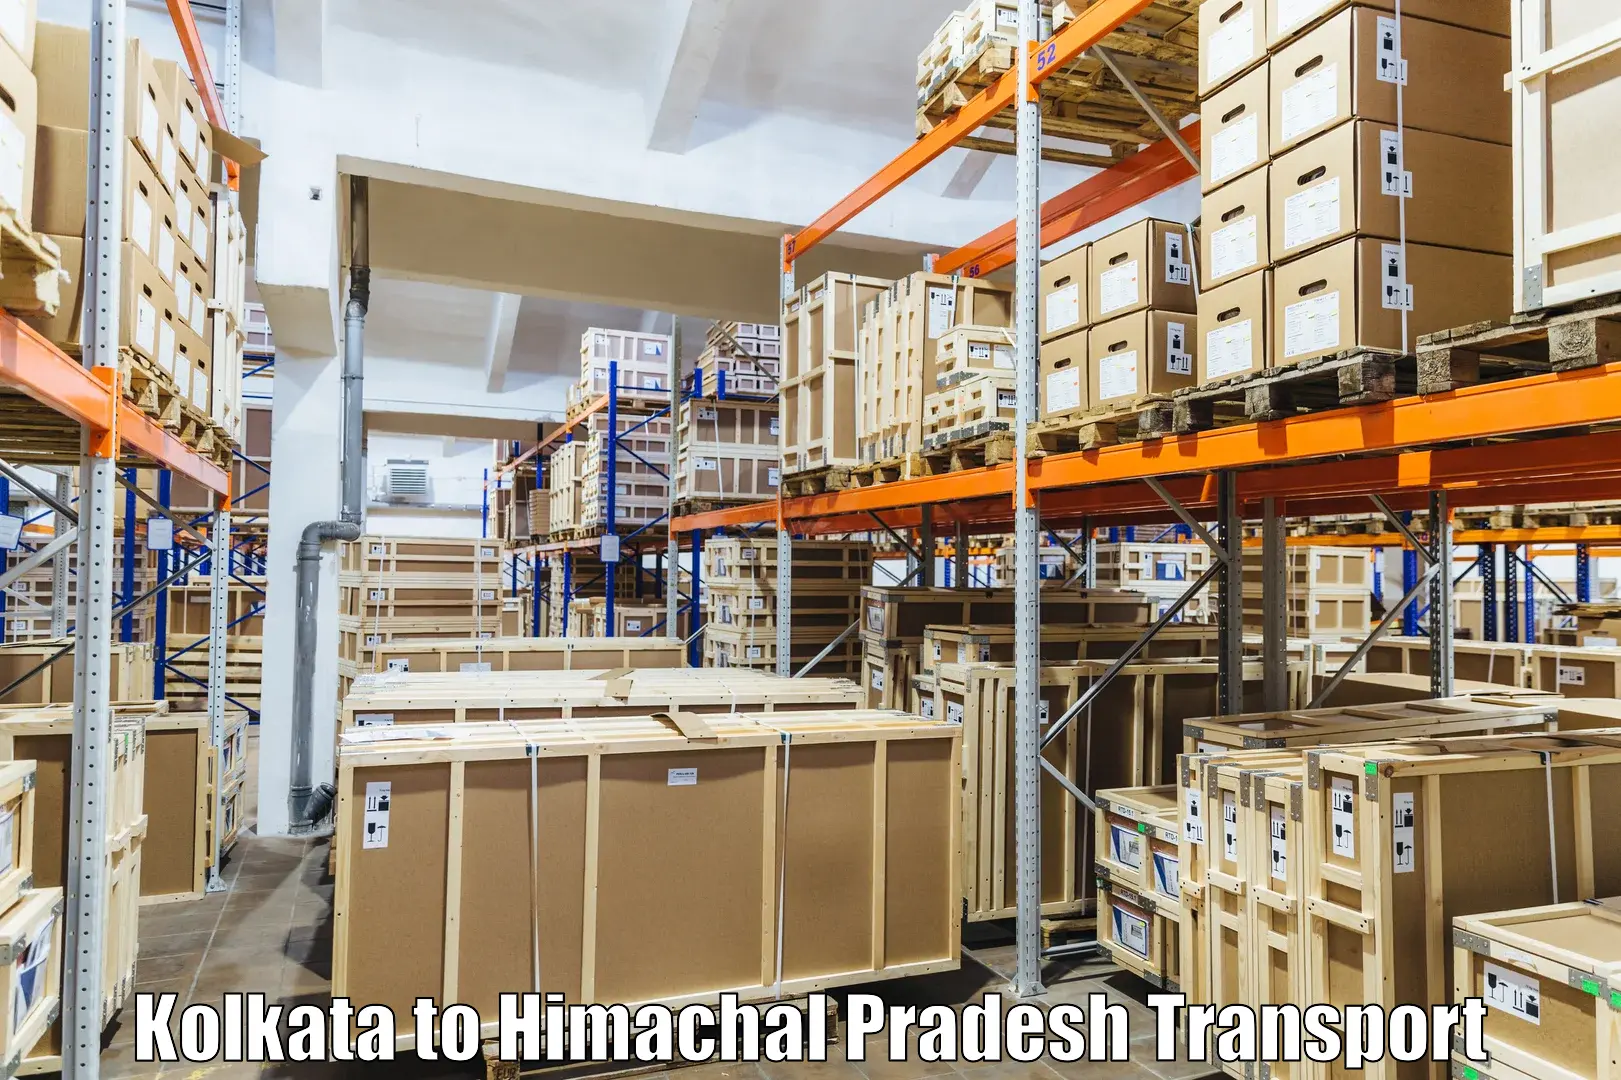 Commercial transport service in Kolkata to Himachal Pradesh